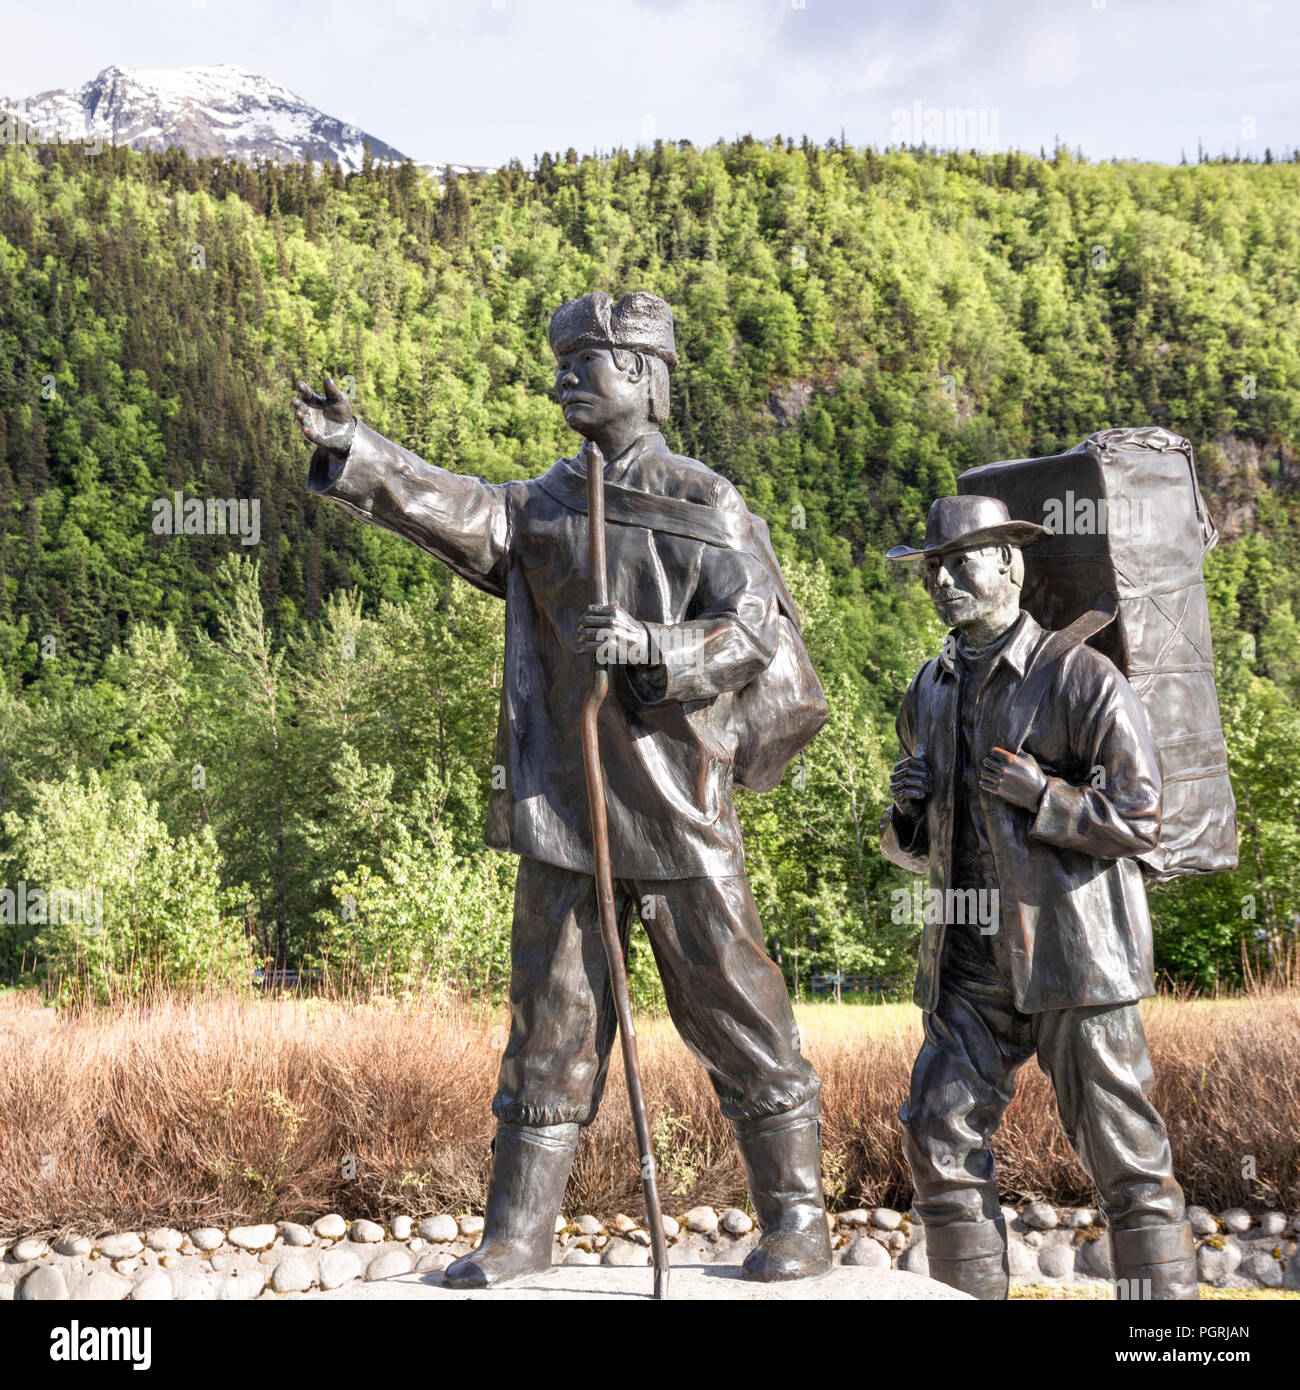 Die skagway Centennial Statue von Chuck Buchanan zeigt eine typische Prospector zur Zeit des Klondike Gold Rush von einem Muttersprachler Tlingit Guide geführt wird Stockfoto